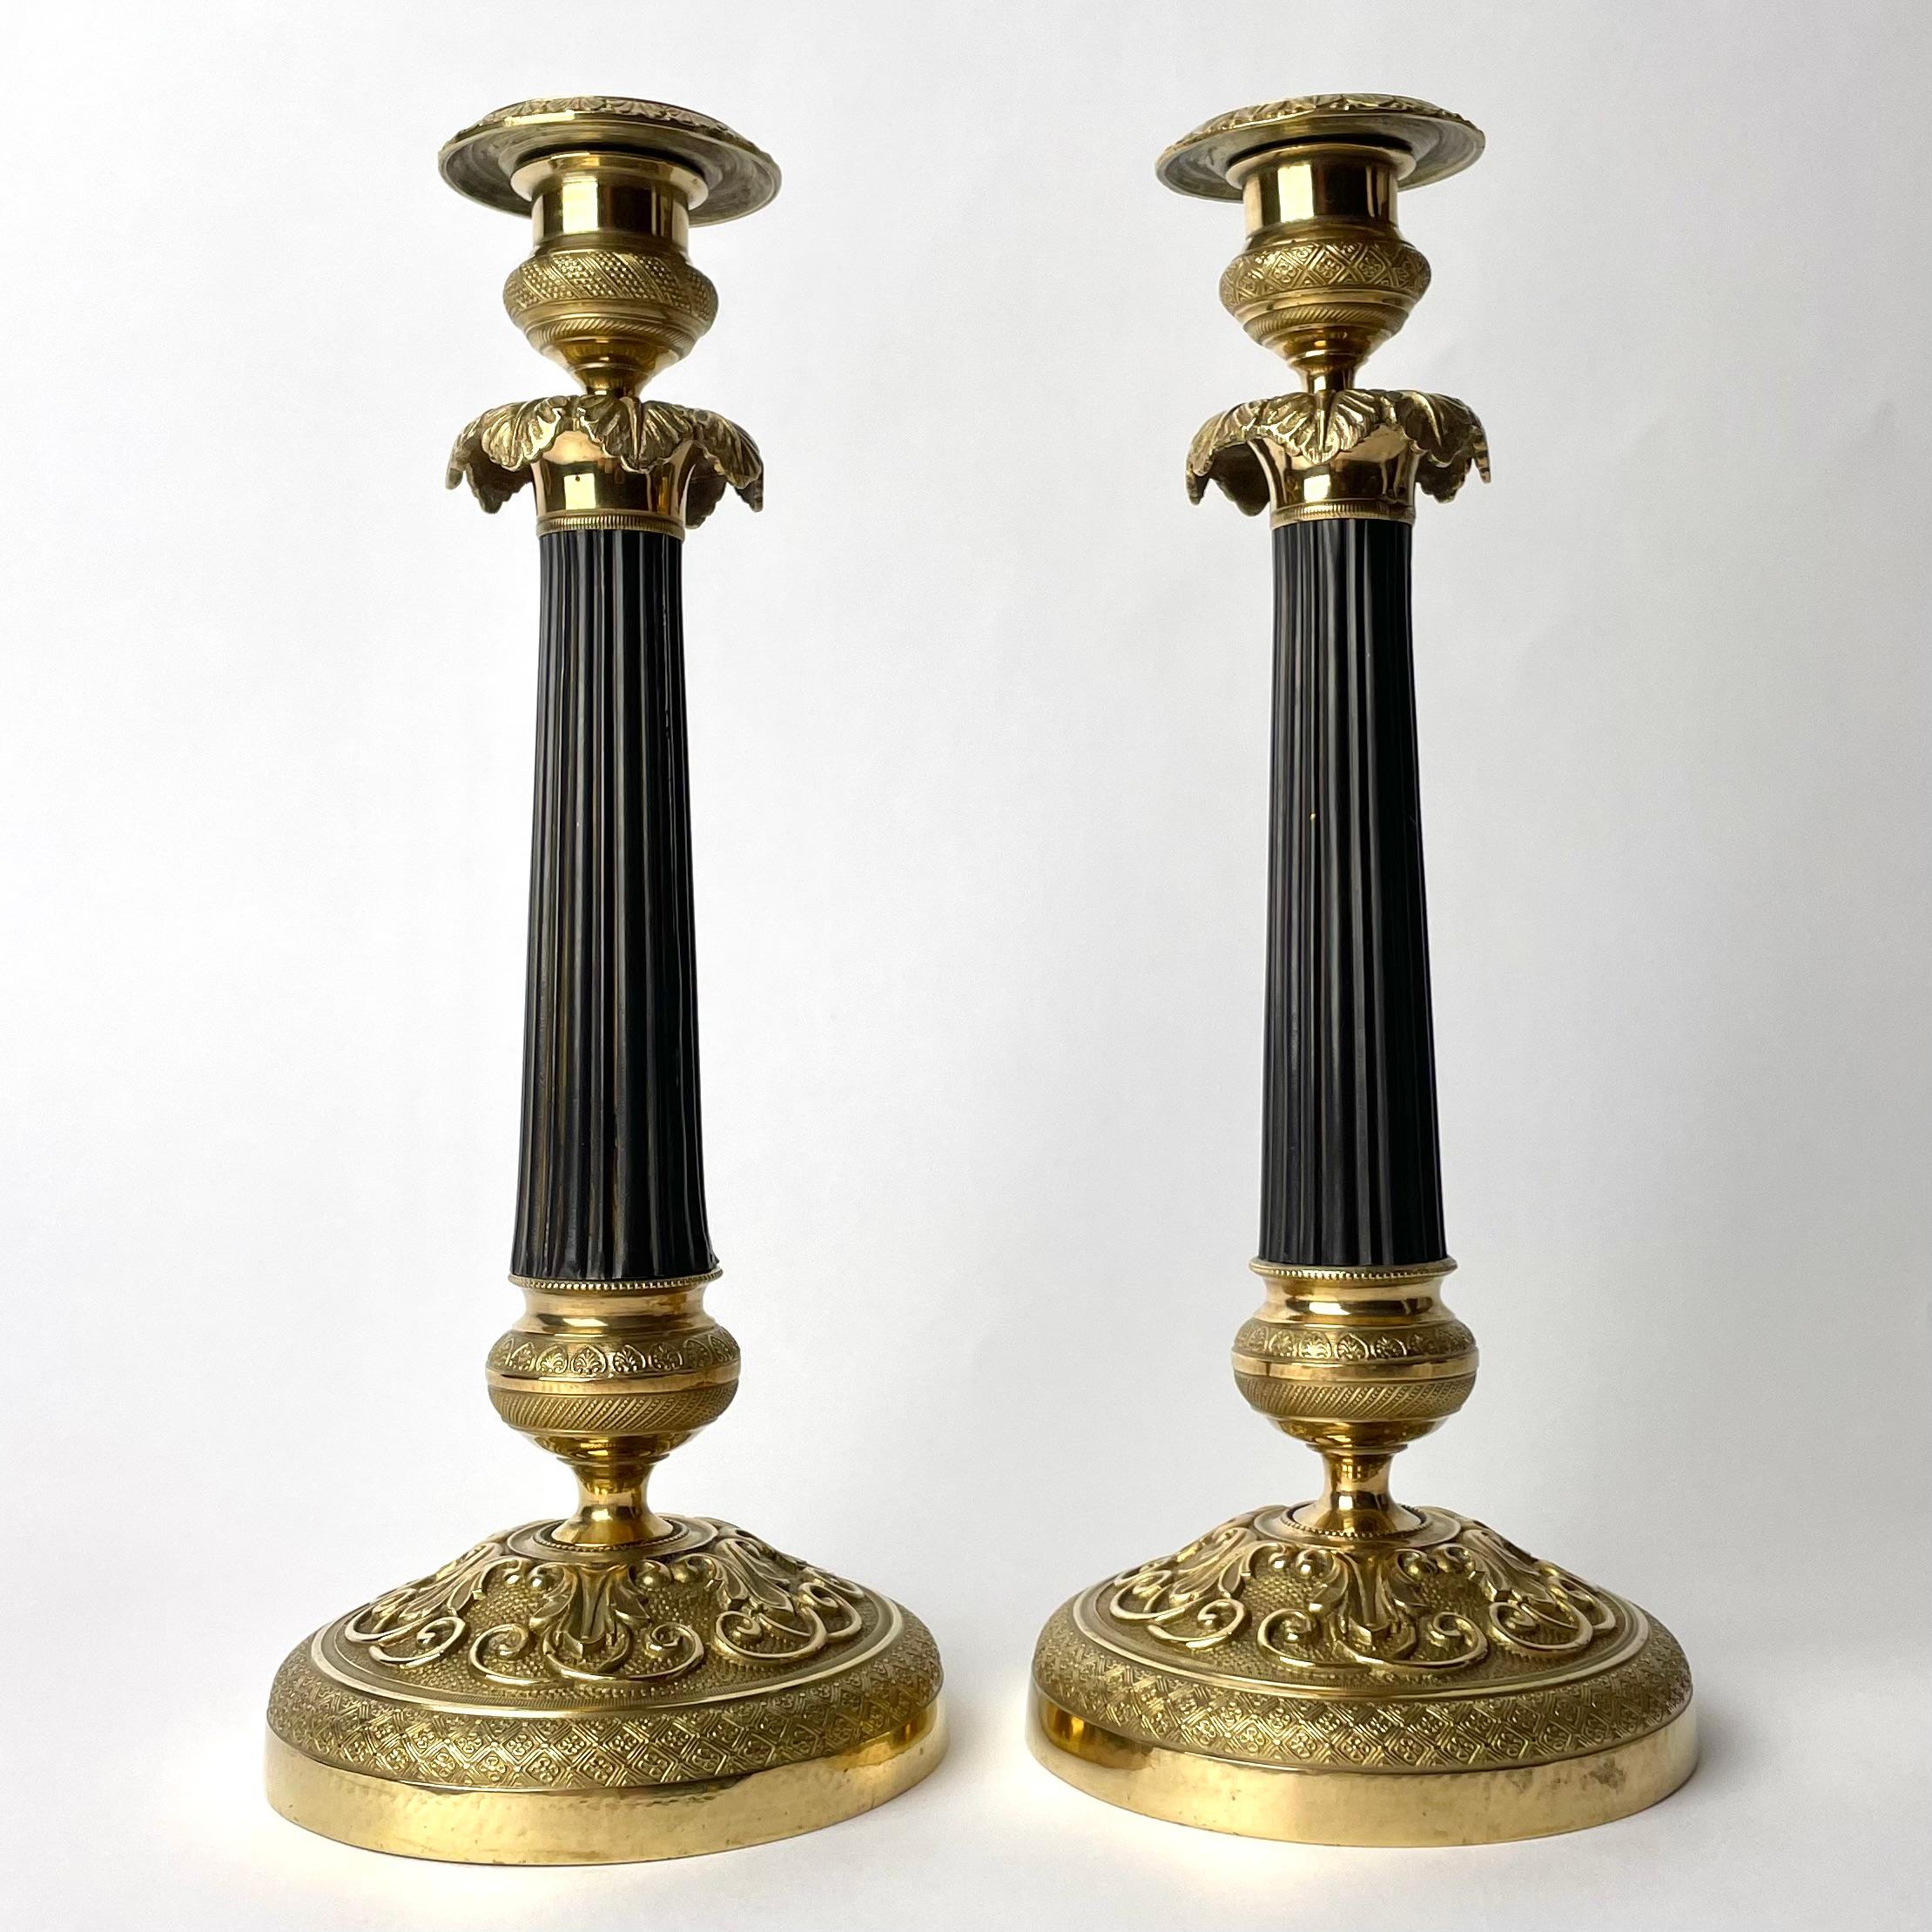  Ein schönes Paar Empire-Kerzenleuchter aus vergoldeter und dunkelpatinierter Bronze. Hergestellt in Frankreich in den 1820er Jahren. Reich verziert mit Blättern und anderen zeitgenössischen Ornamenten sowie einer dunkel patinierten Säule in der